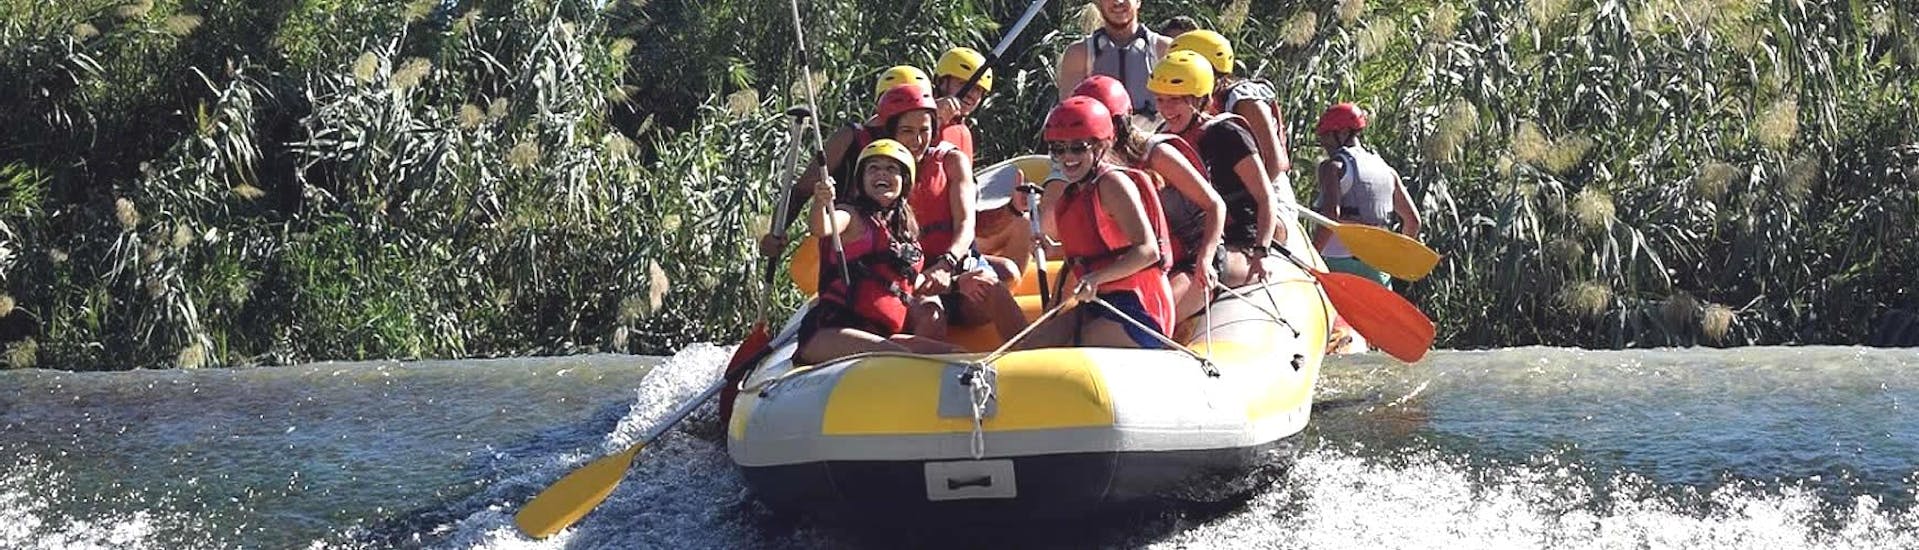 Rafting clásico en el Río Segura.